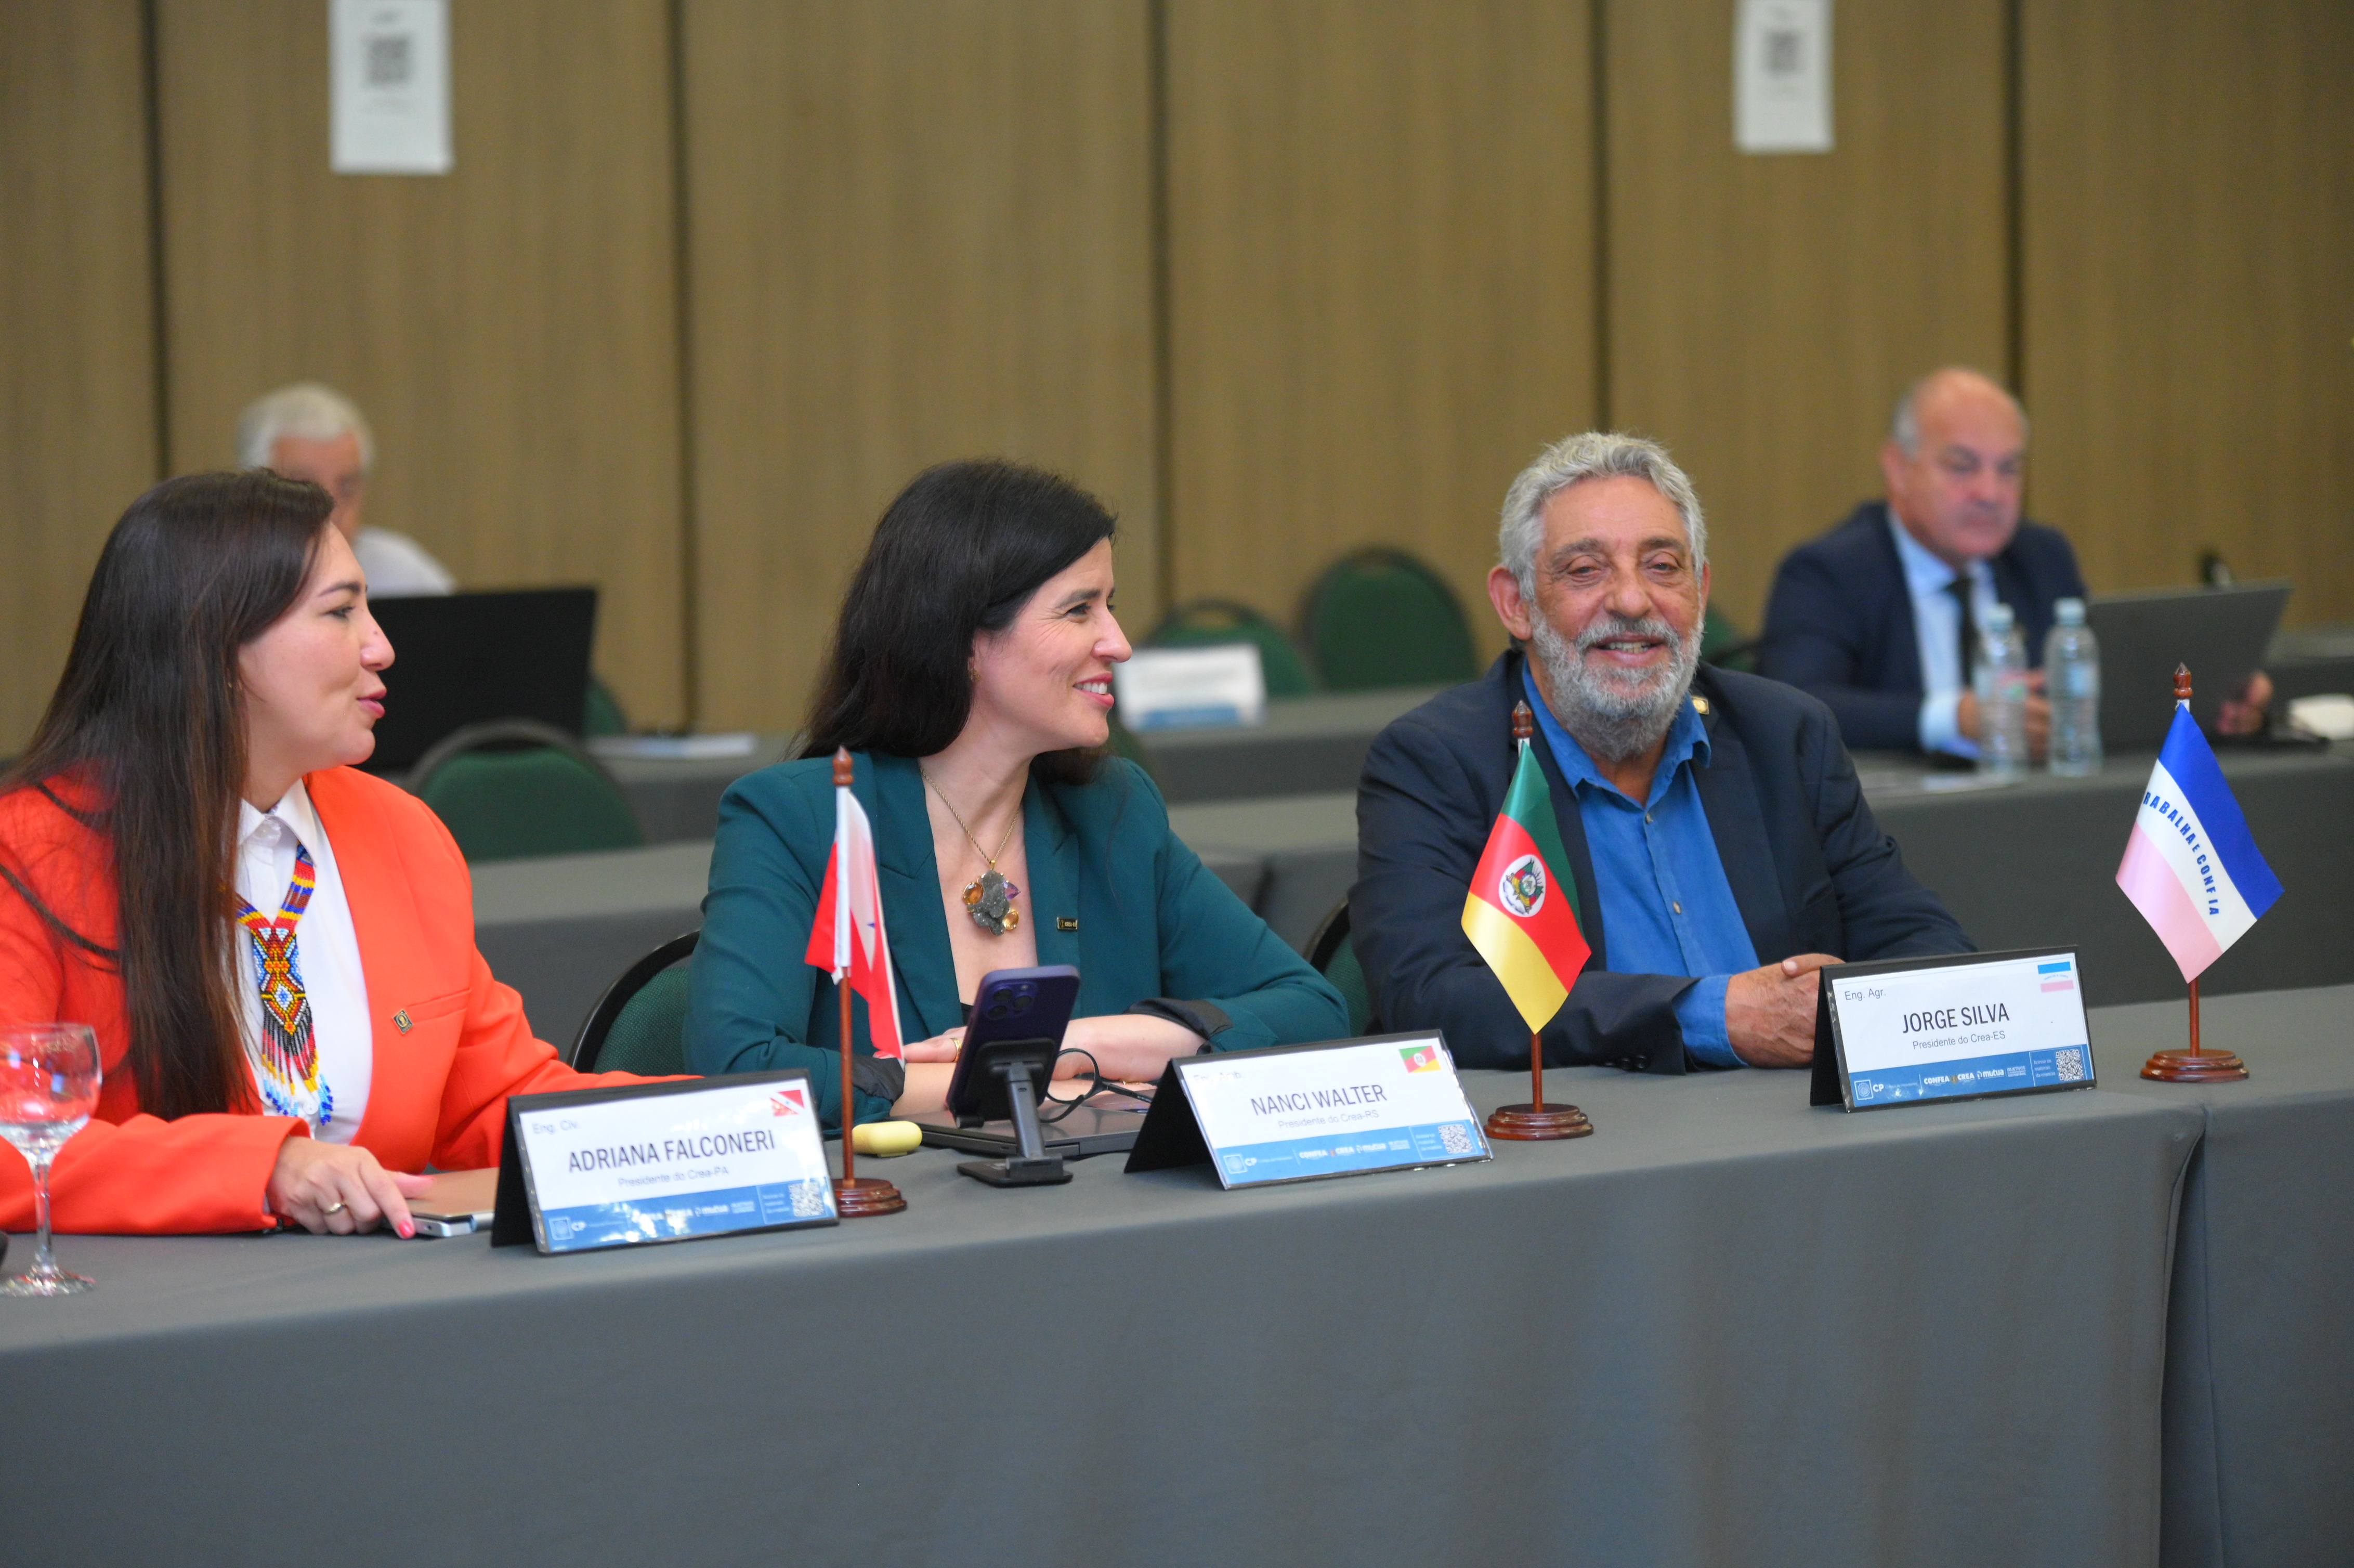 Presidentes dos regionais do Pará, Adriana Falconeri, do Rio Grande do Sul, Nanci Walter, e do Espírito Santo, Jorge Silva representarão o CP no GT da COP 30